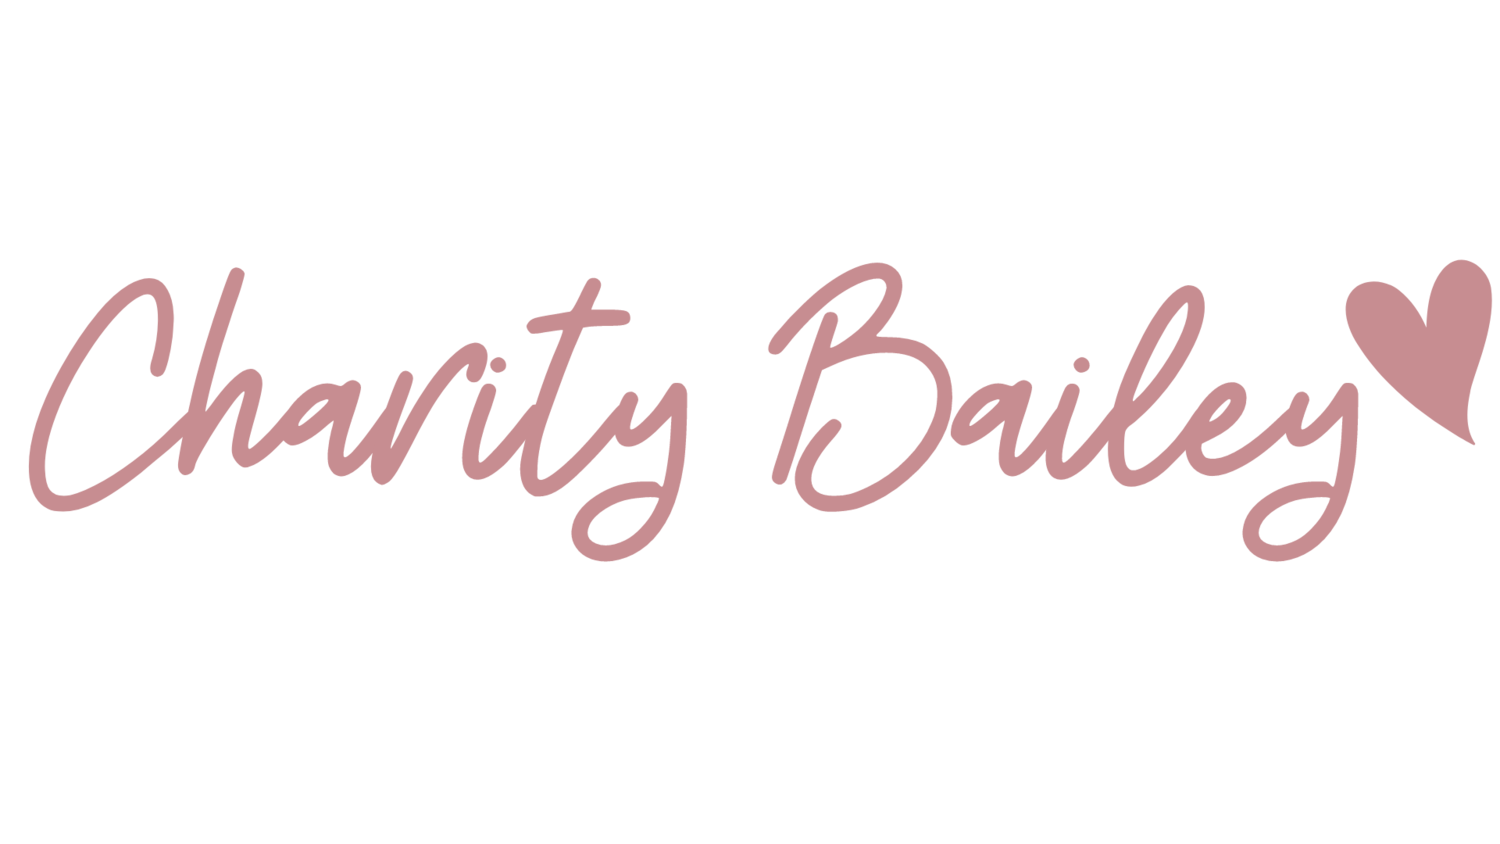 CharityBailey.com